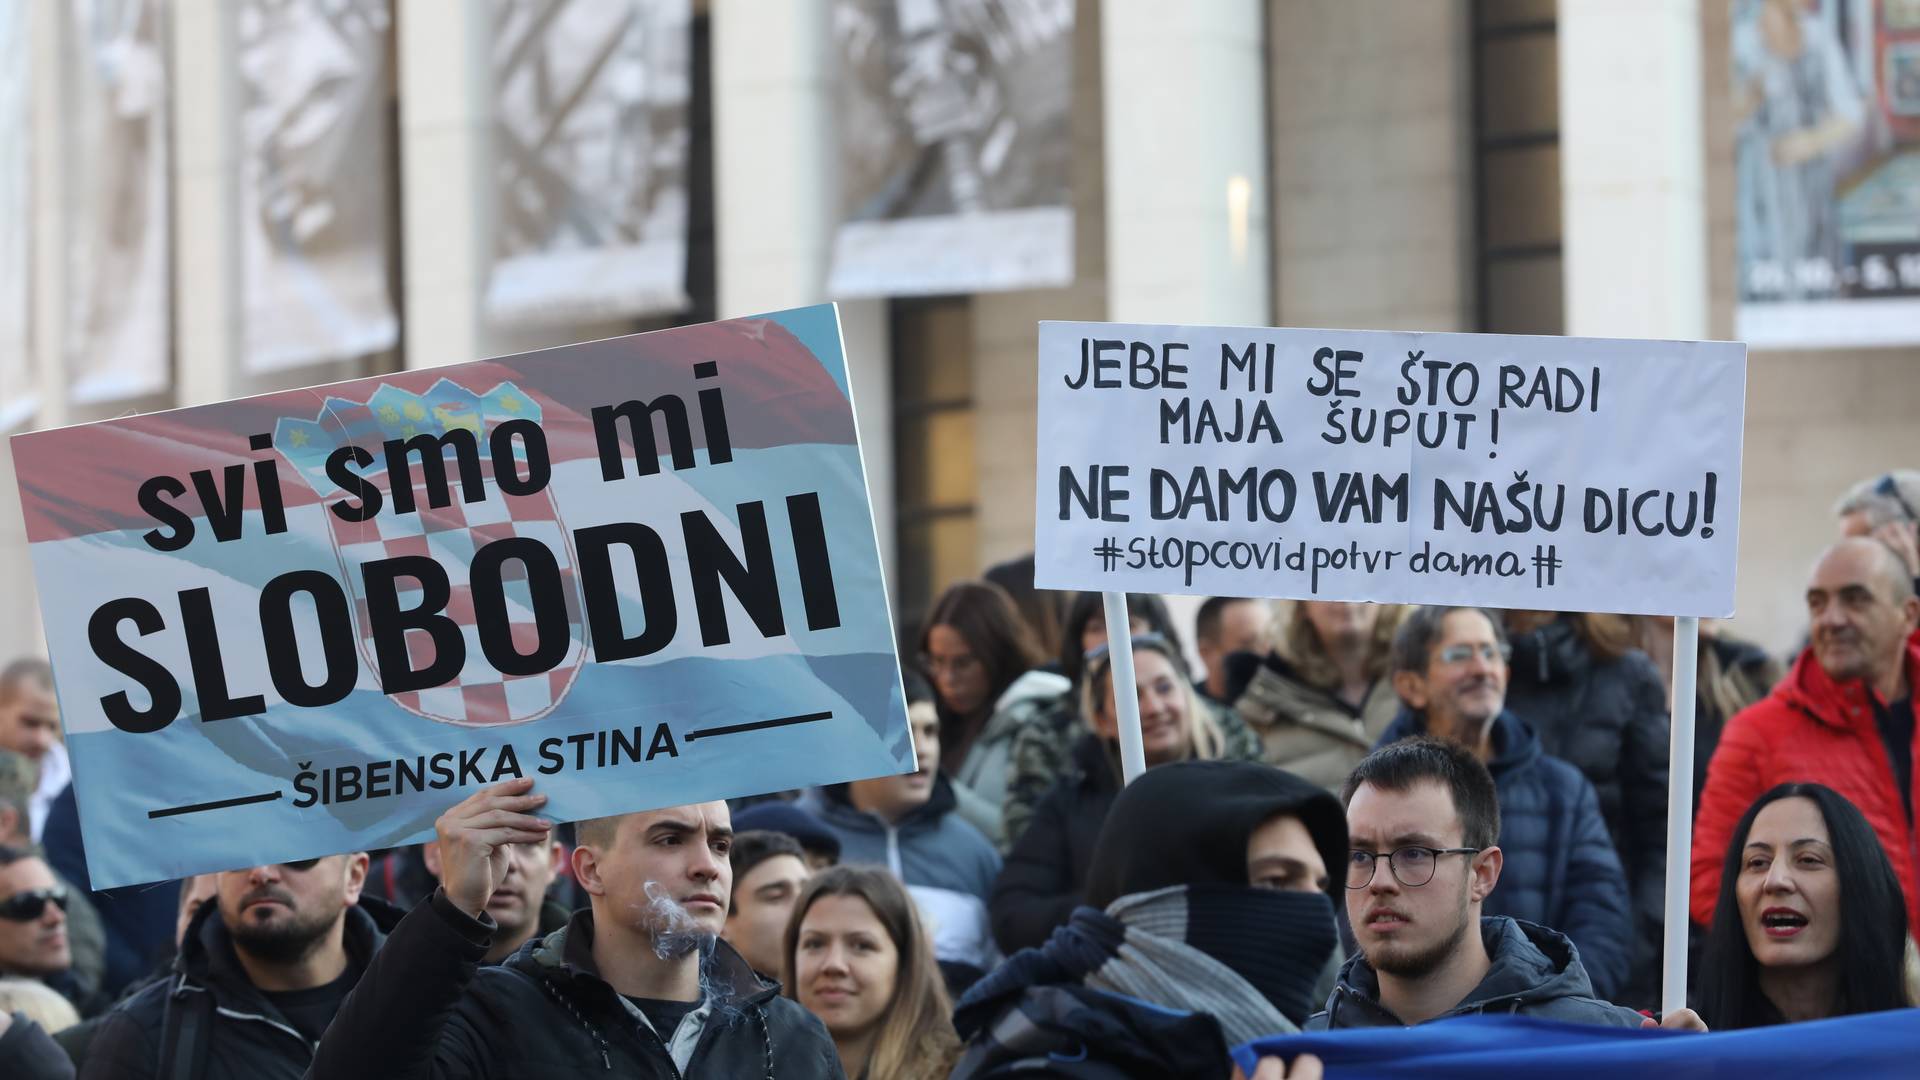 Više od 10.000 ljudi protesuje u Zagrebu zbog kovid propusnica - uzvikuju "ne damo vam decu" i "nema predaje"